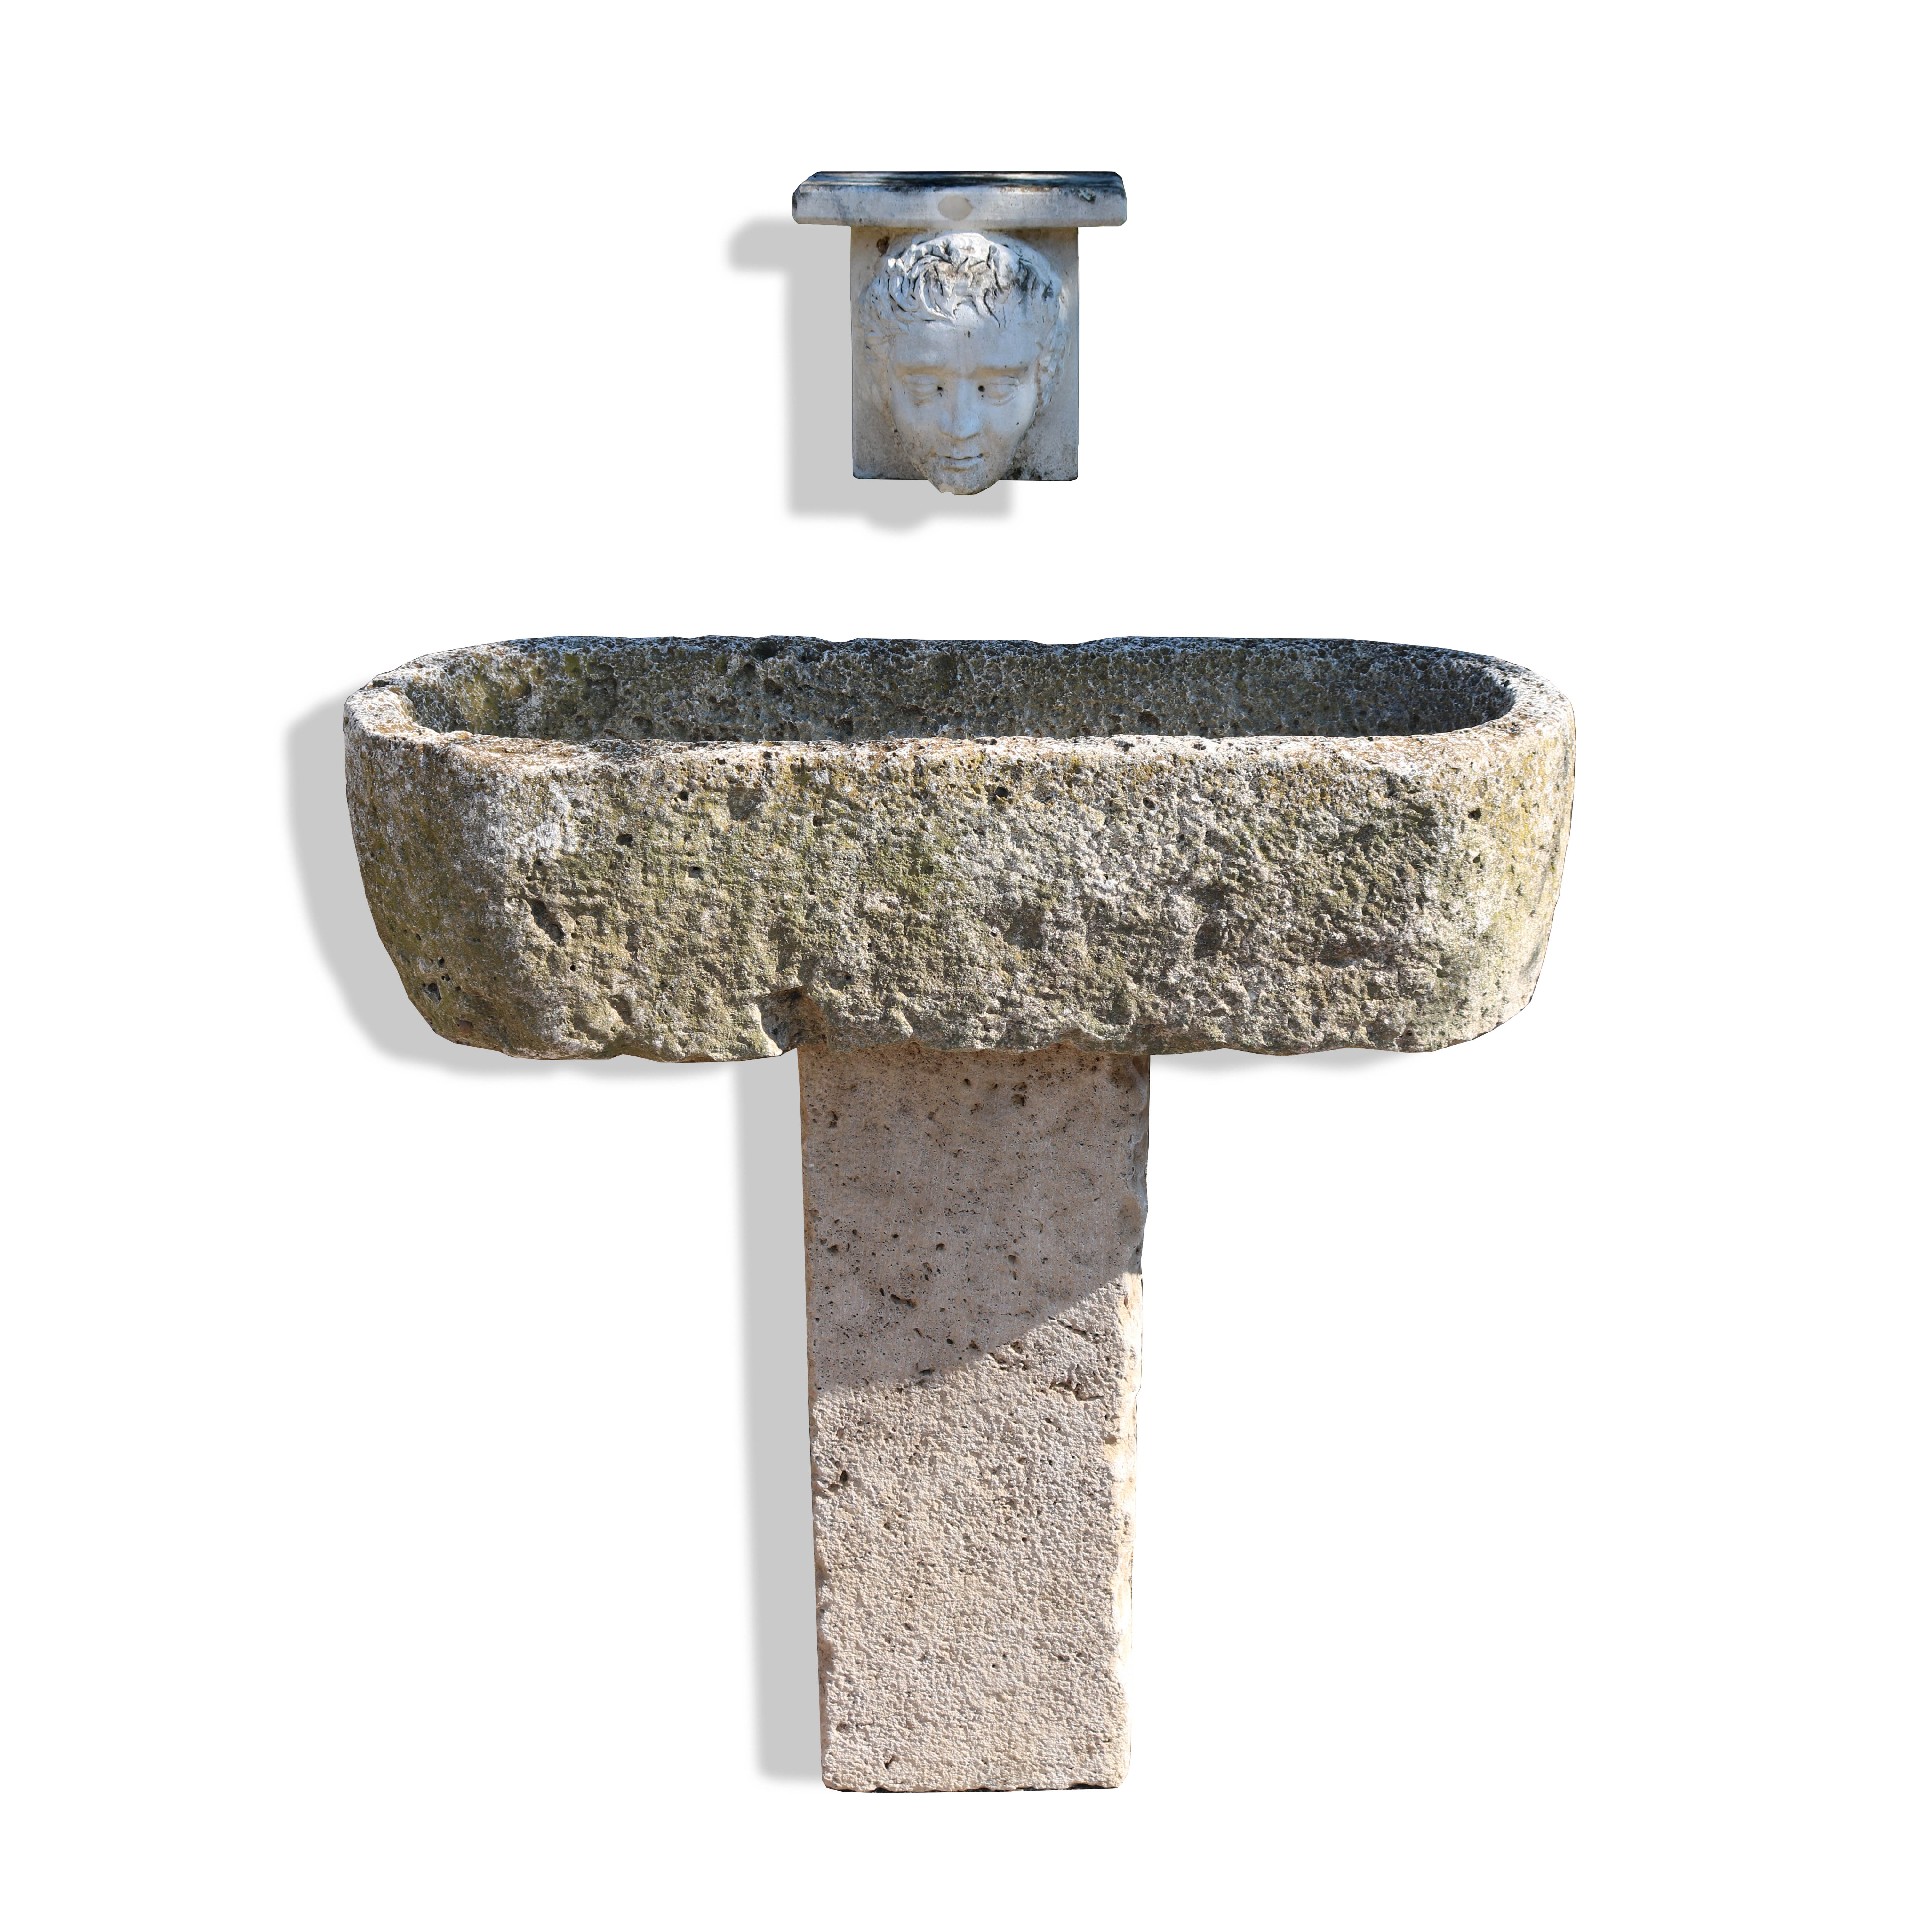 Fontana antica in pietra. - Fontane Antiche - Arredo Giardino - Prodotti - Antichità Fiorillo